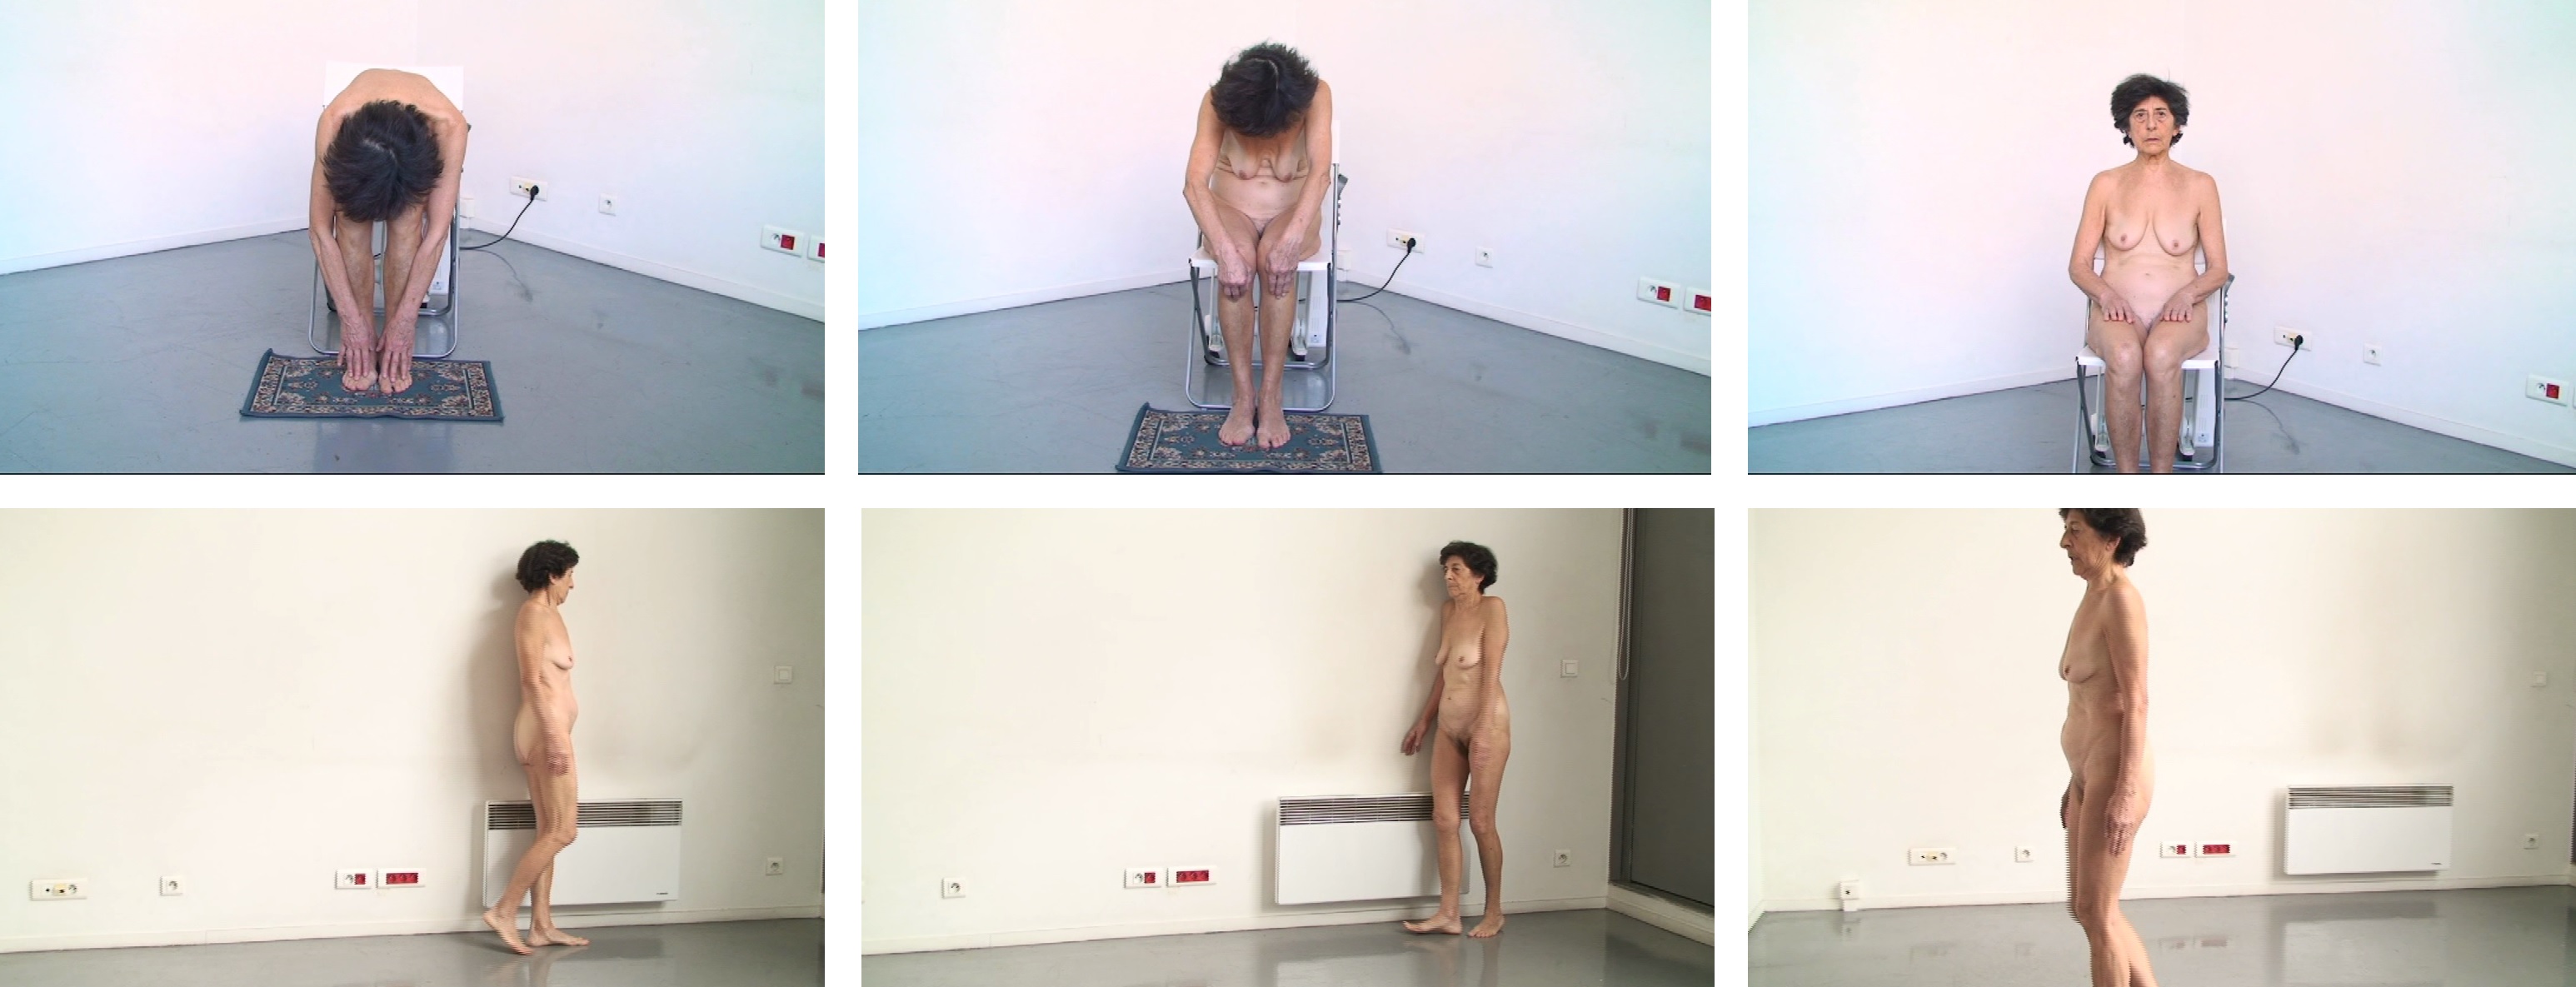 E. Ferrer. Acciones corporales, íntimo y personal performance (2013)